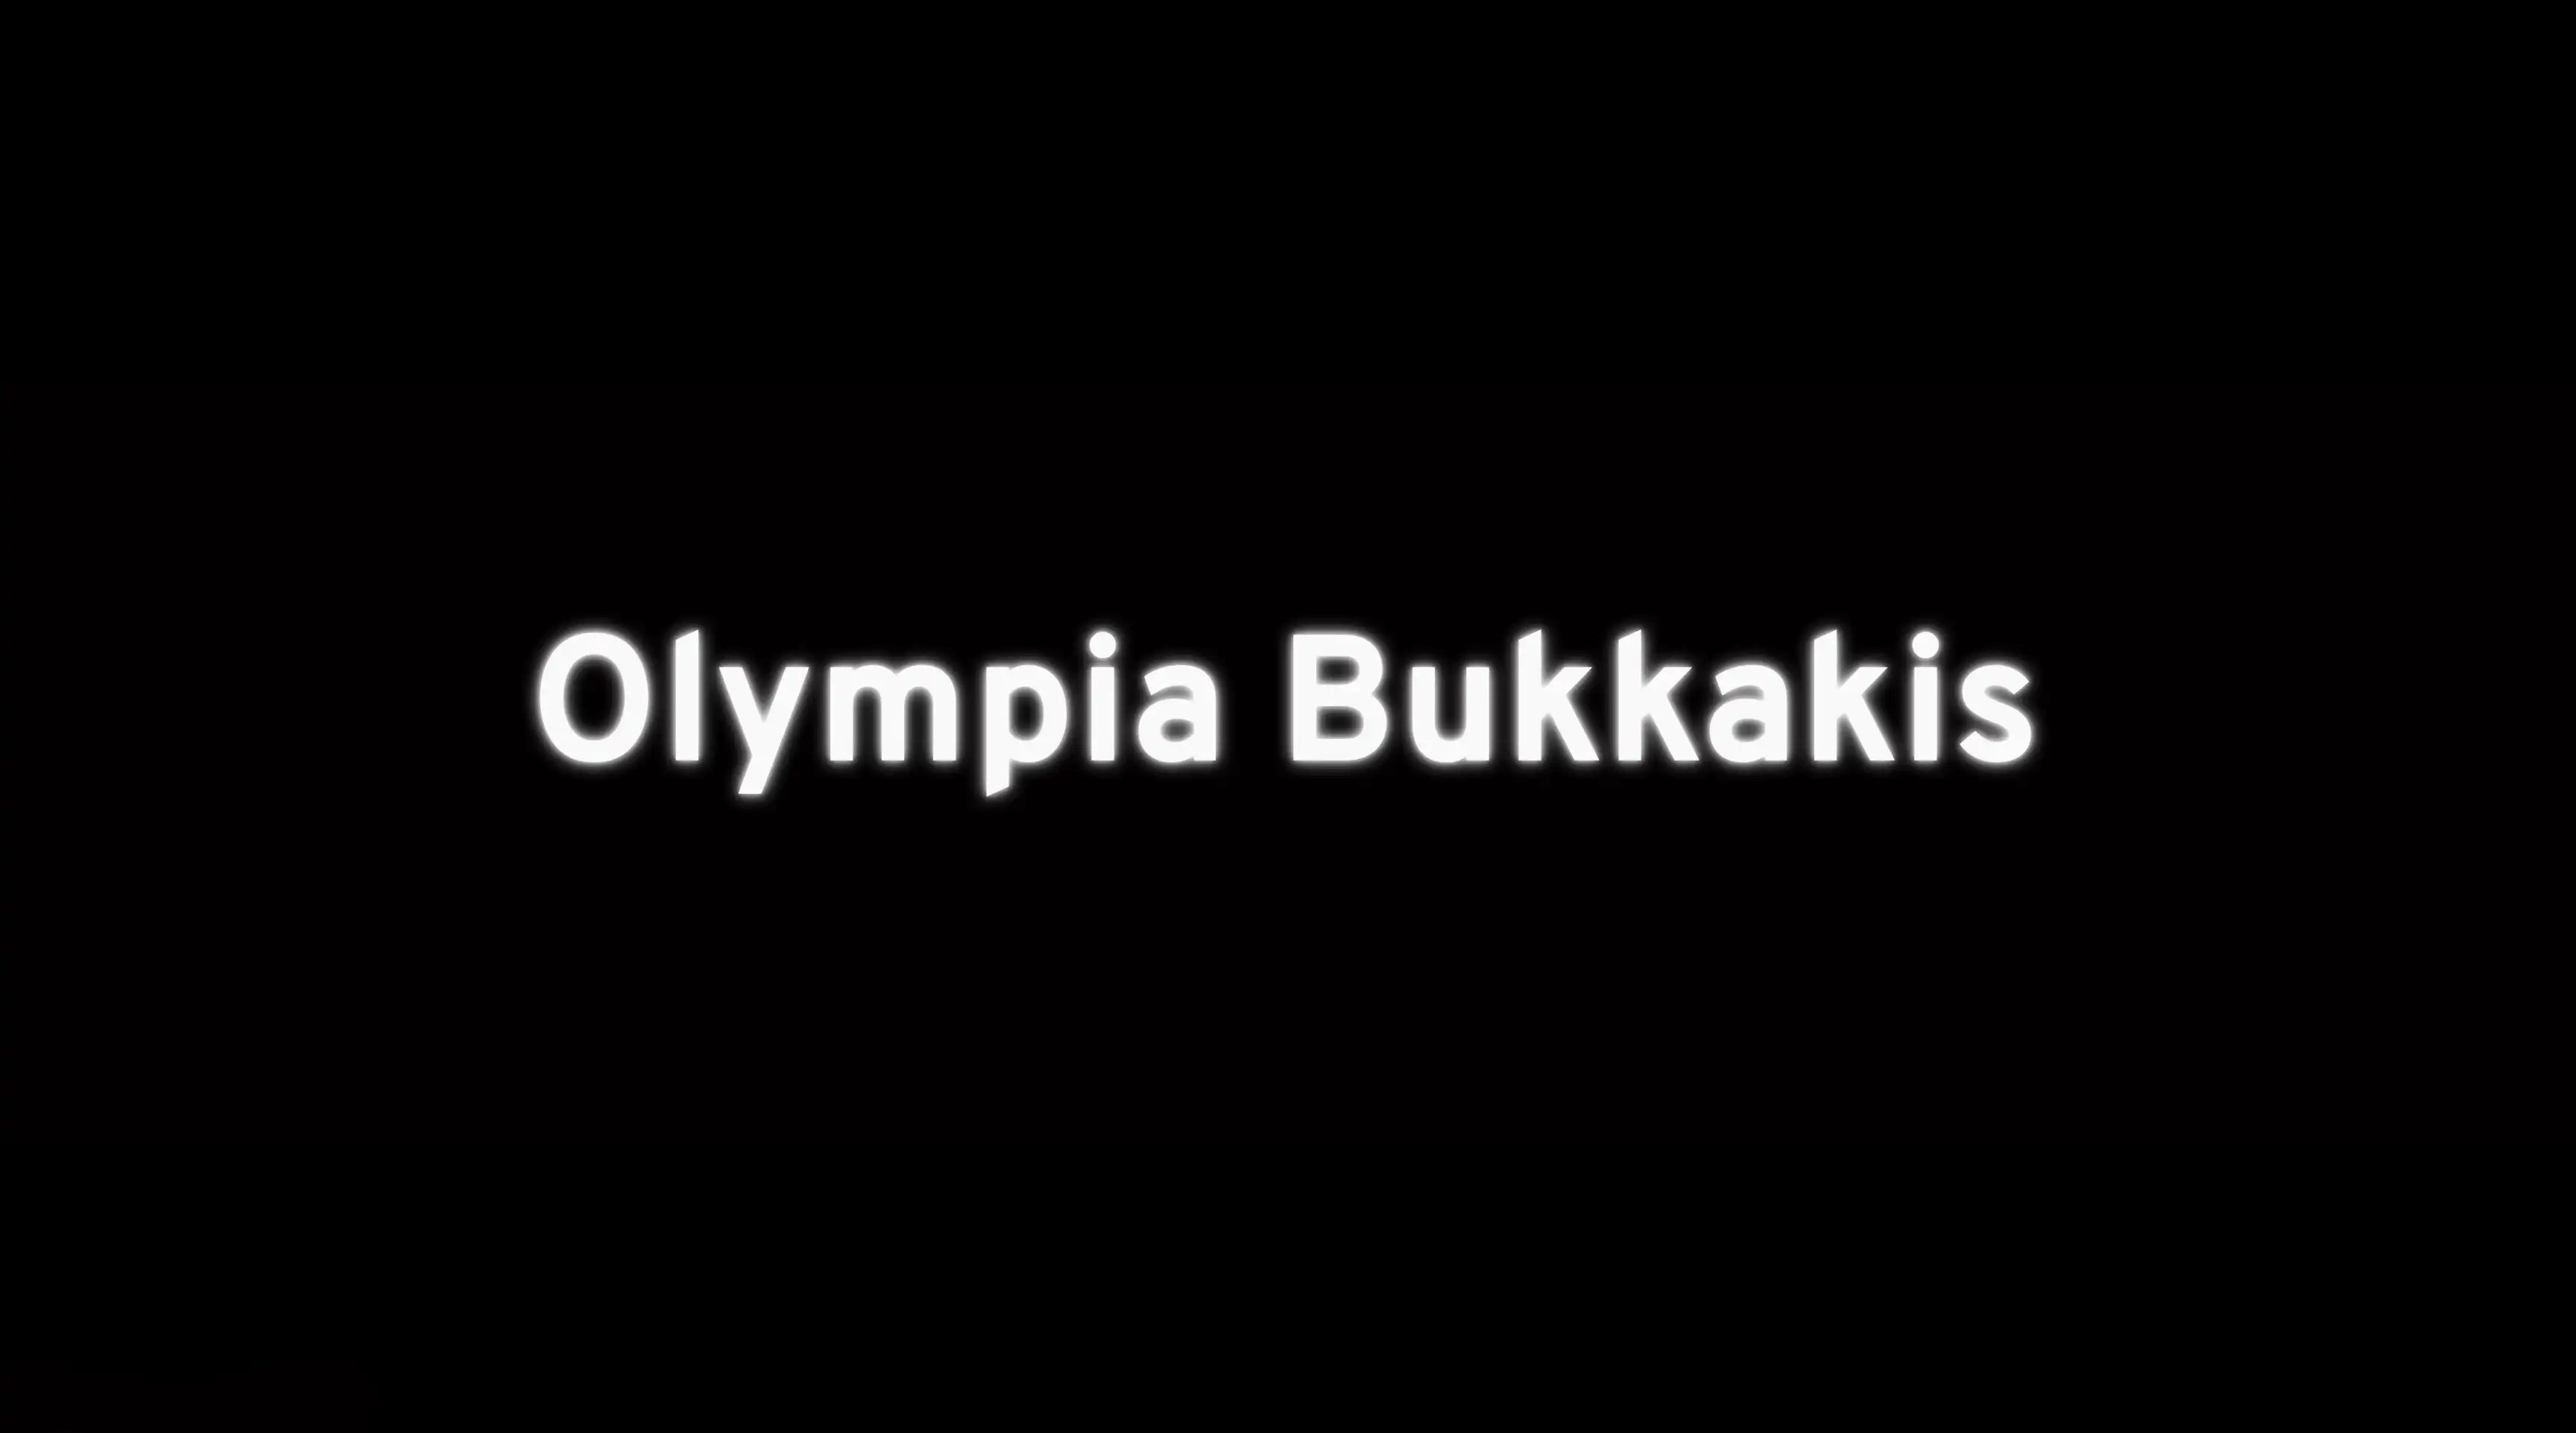 Olympia Bukkakis landing page view